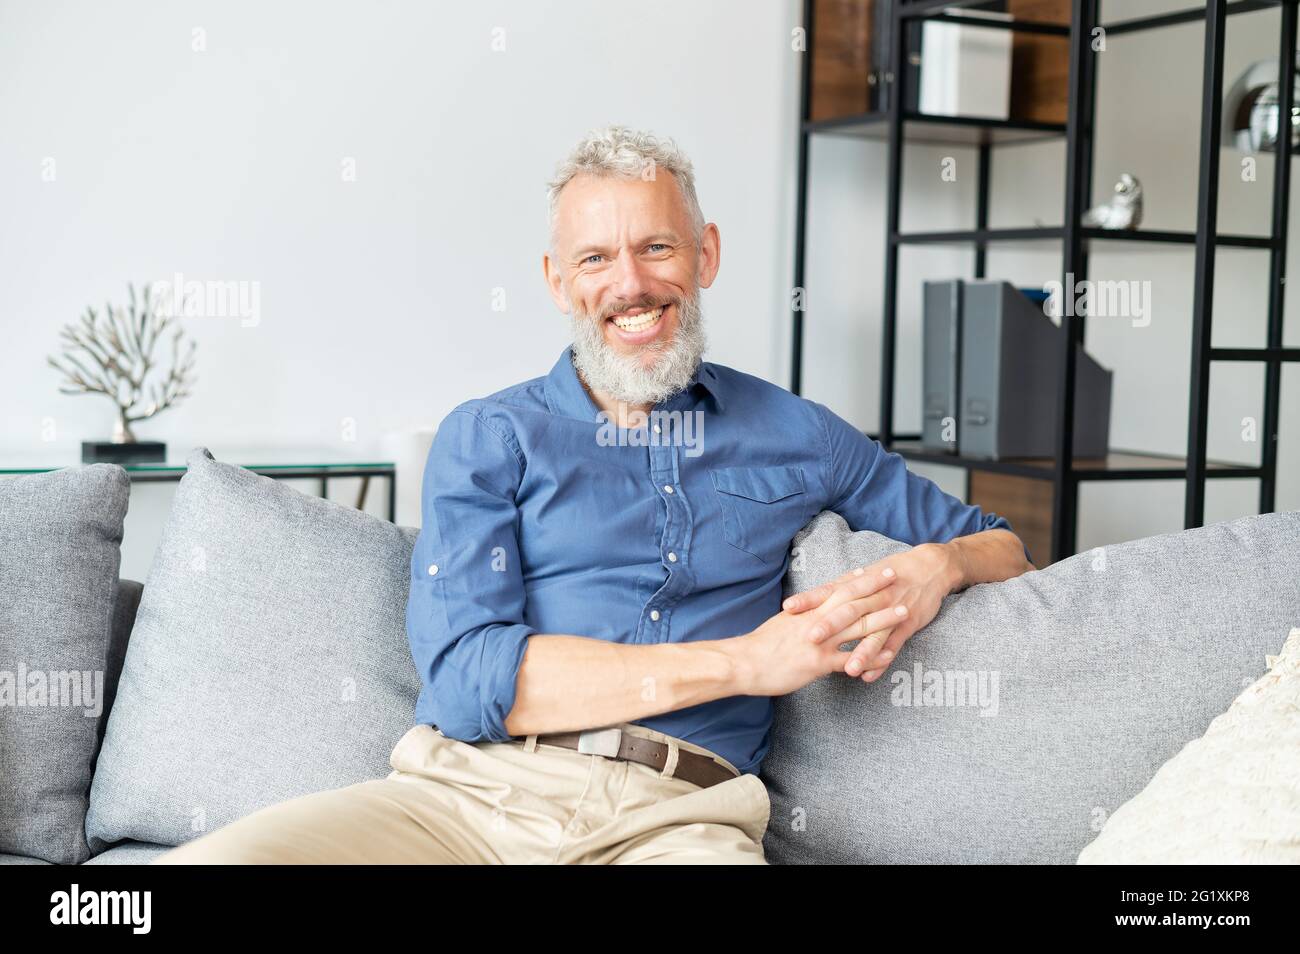 Ein gutaussehender, optimistischer, reifer Mann, der mit einem fröhlichen, toothy Lächeln auf die Kamera starrt, ein glücklicher älterer Mann in eleganter Freizeitkleidung, der zu Hause auf dem Sofa sitzt. Lifestyle- und Wohlfühlkonzept Stockfoto